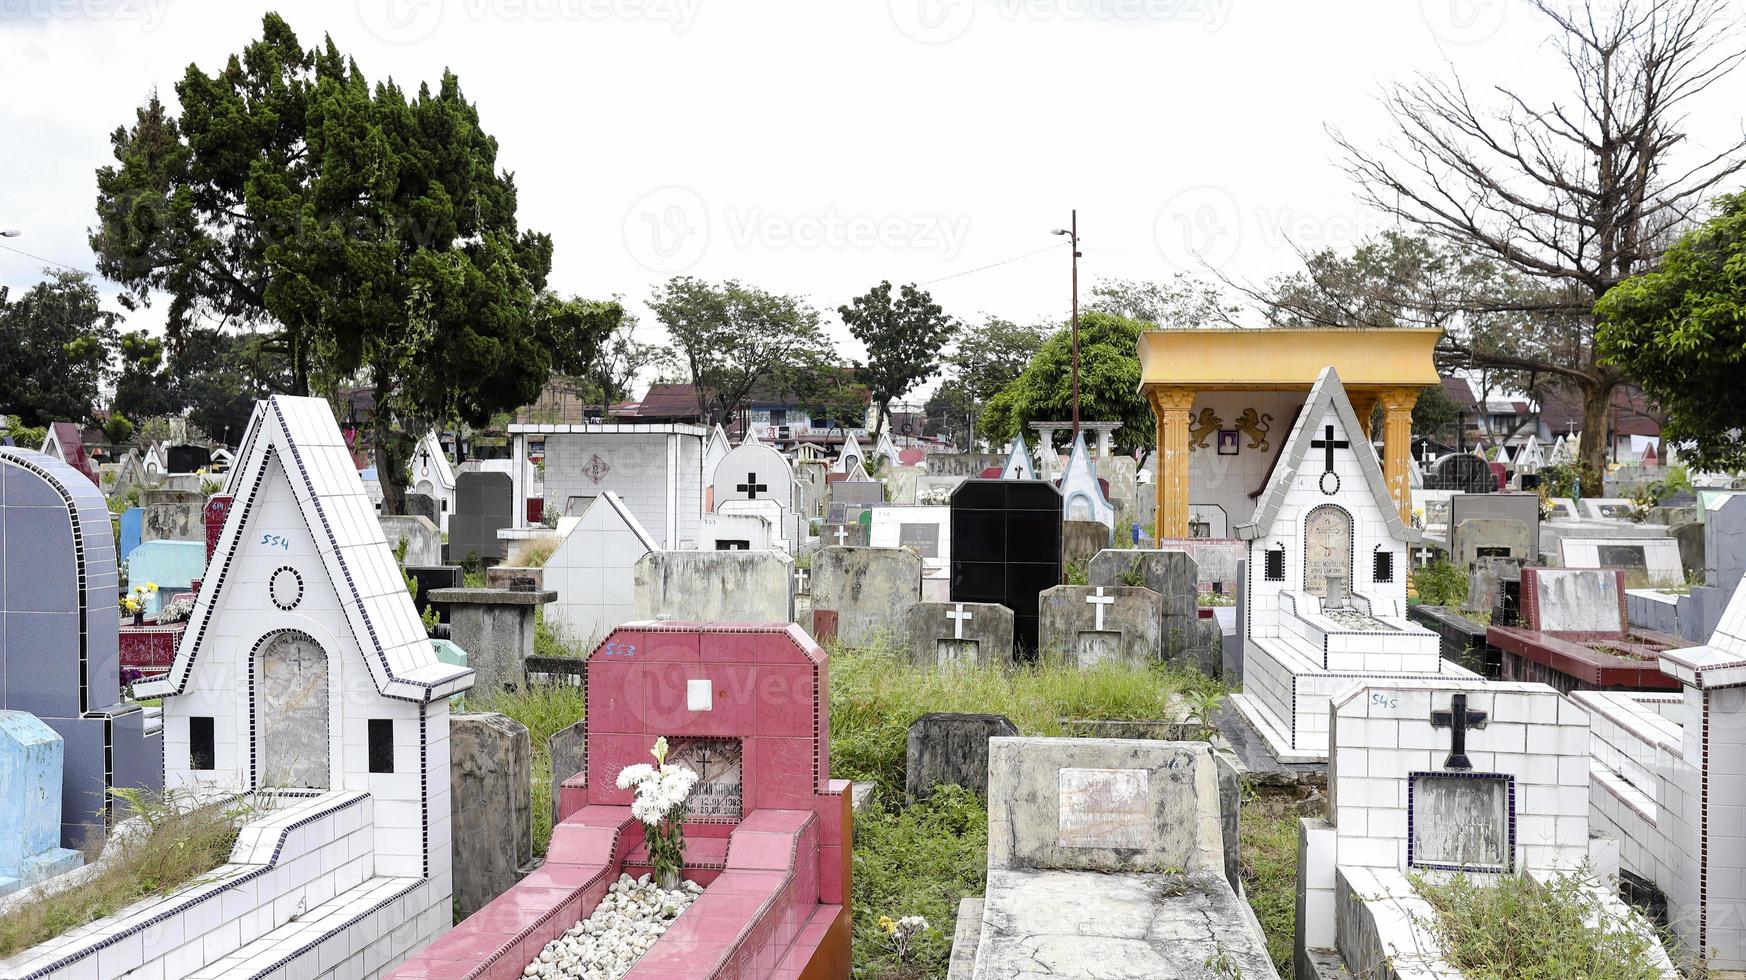 offentlig kyrkogård med varierande gravar. foto